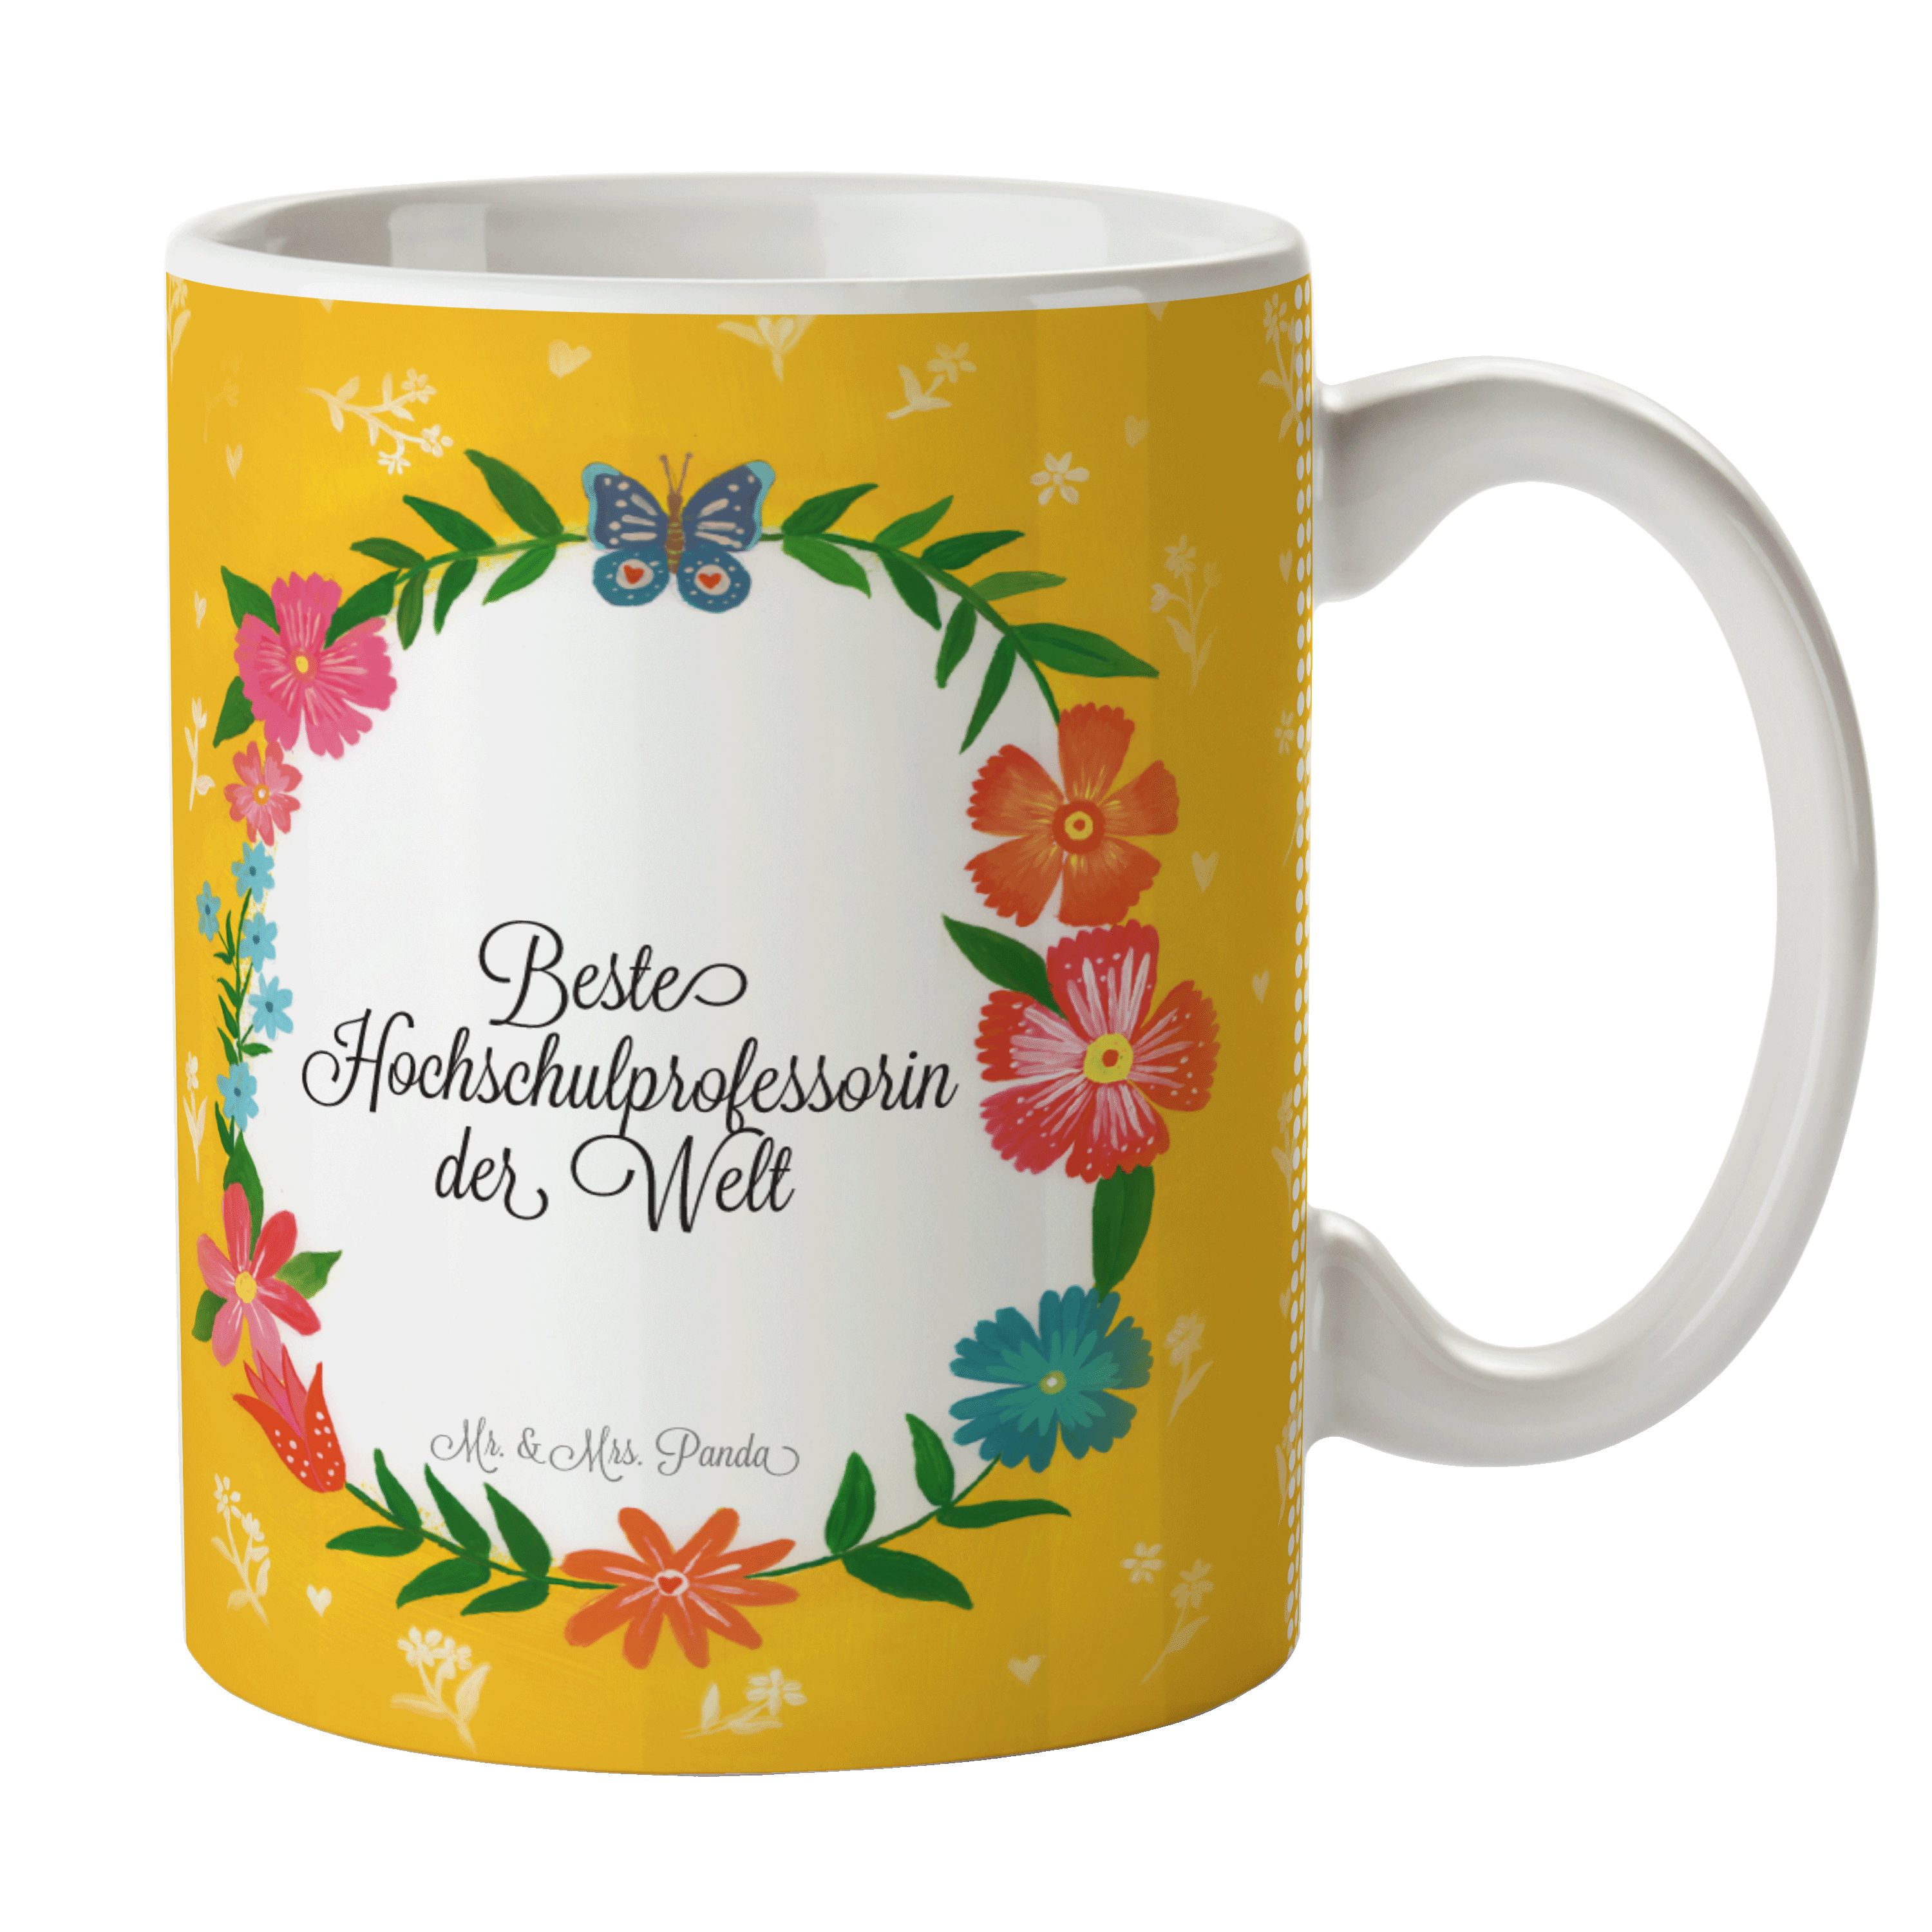 Mr. & Mrs. Keramik Motive, Geschenk Tasse Hochschulprofessorin Tasse, Tasse Geschenk, - Kaffee, Panda